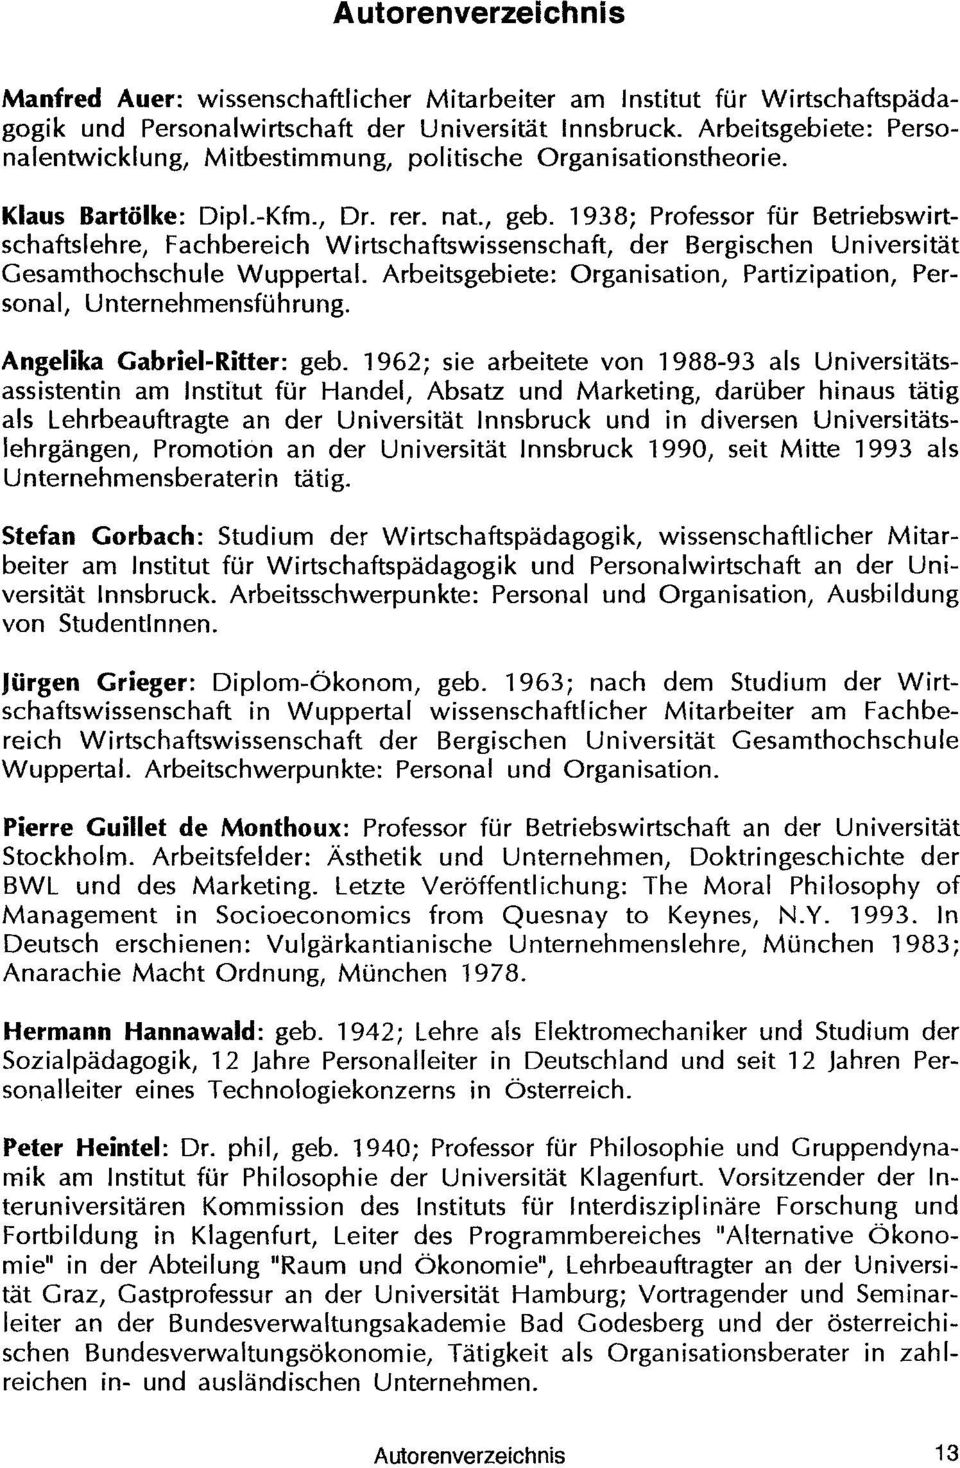 1938; Professor fur Betriebswirtschaftslehre, Fachbereich Wirtschaftswissenschaft, der Bergischen Universitat Gesamthochschule Wuppertal.